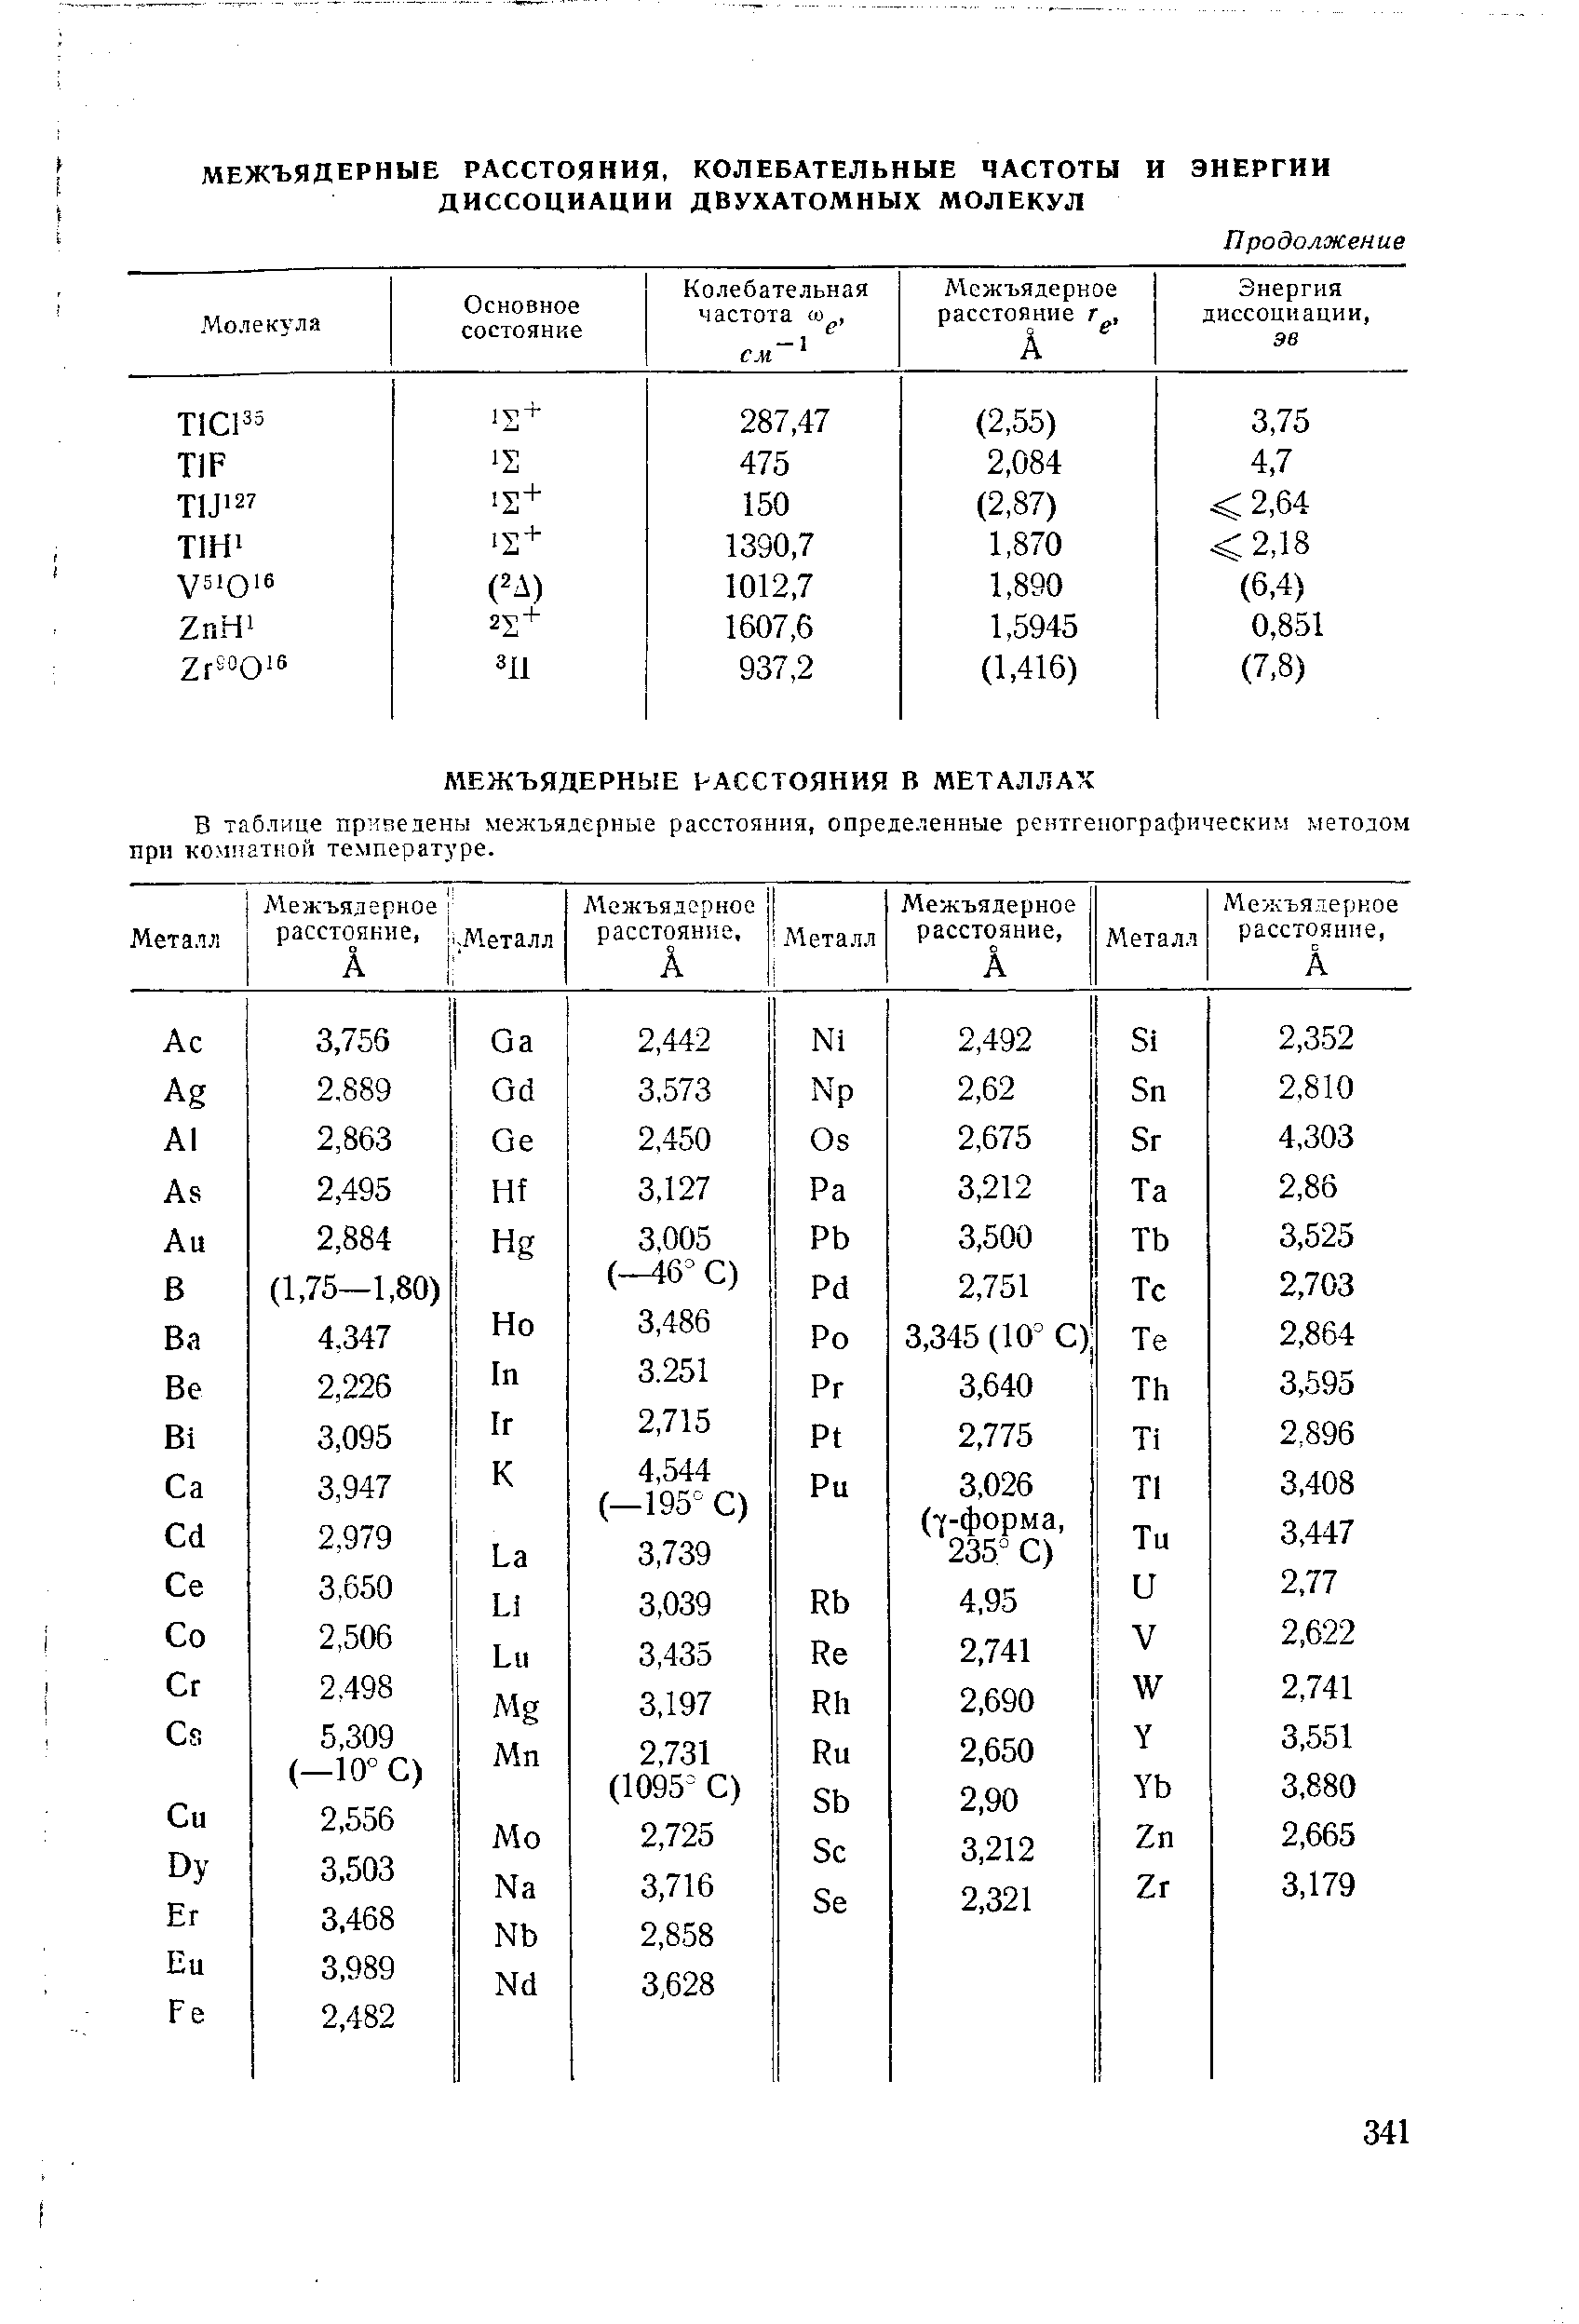 В таблице приведены межъядерные расстояния, определенные рентгенографическим методом при коитатной температуре.